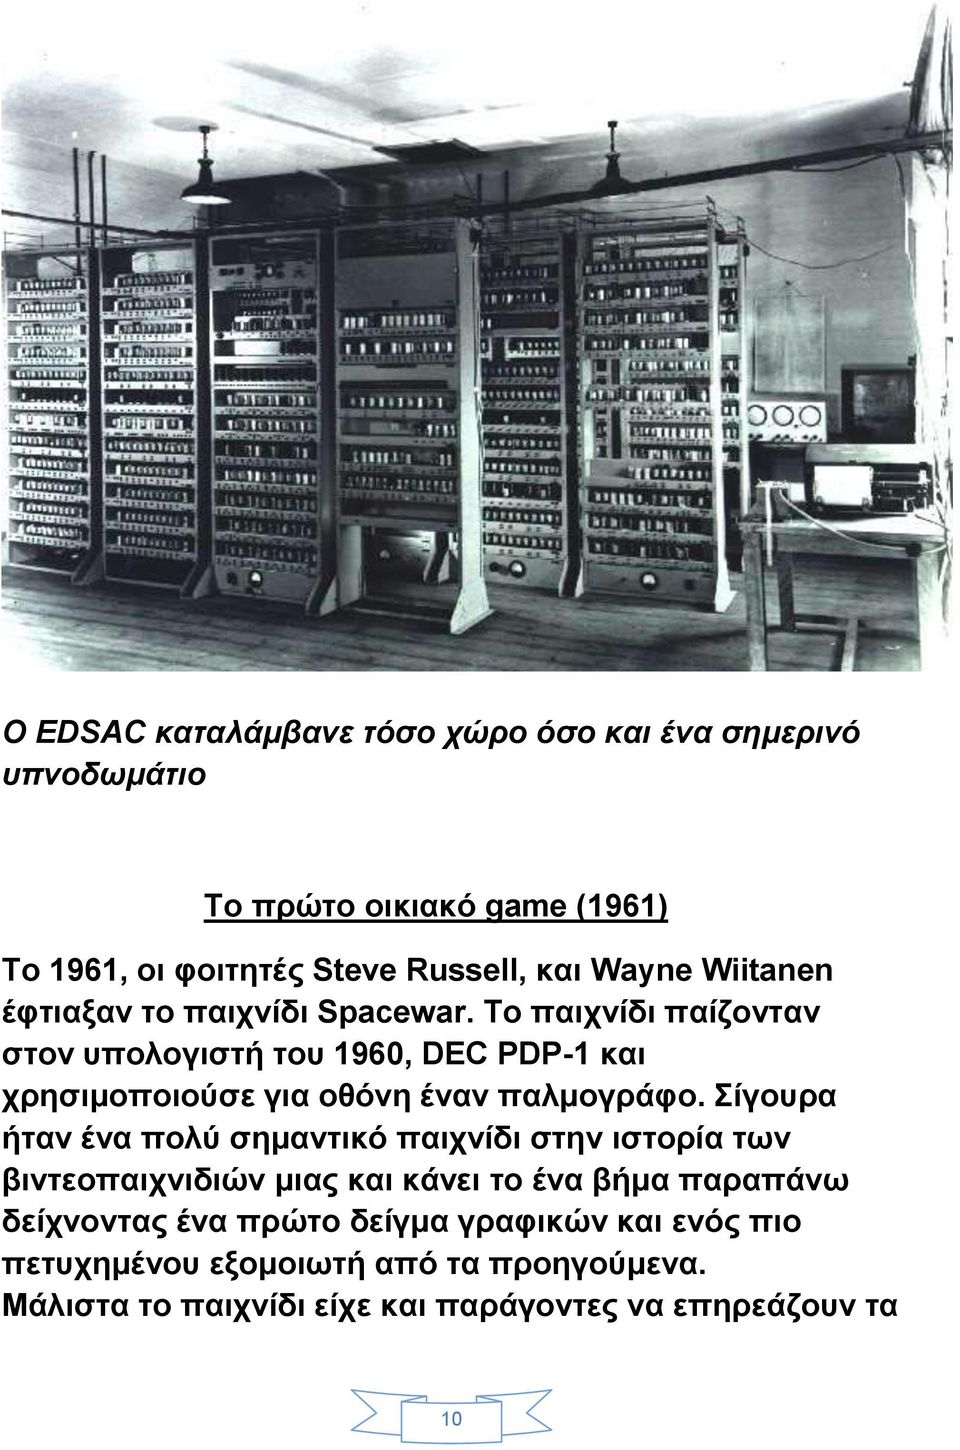 Το παιχνίδι παίζονταν στον υπολογιστή του 1960, DEC PDP-1 και χρησιμοποιούσε για οθόνη έναν παλμογράφο.